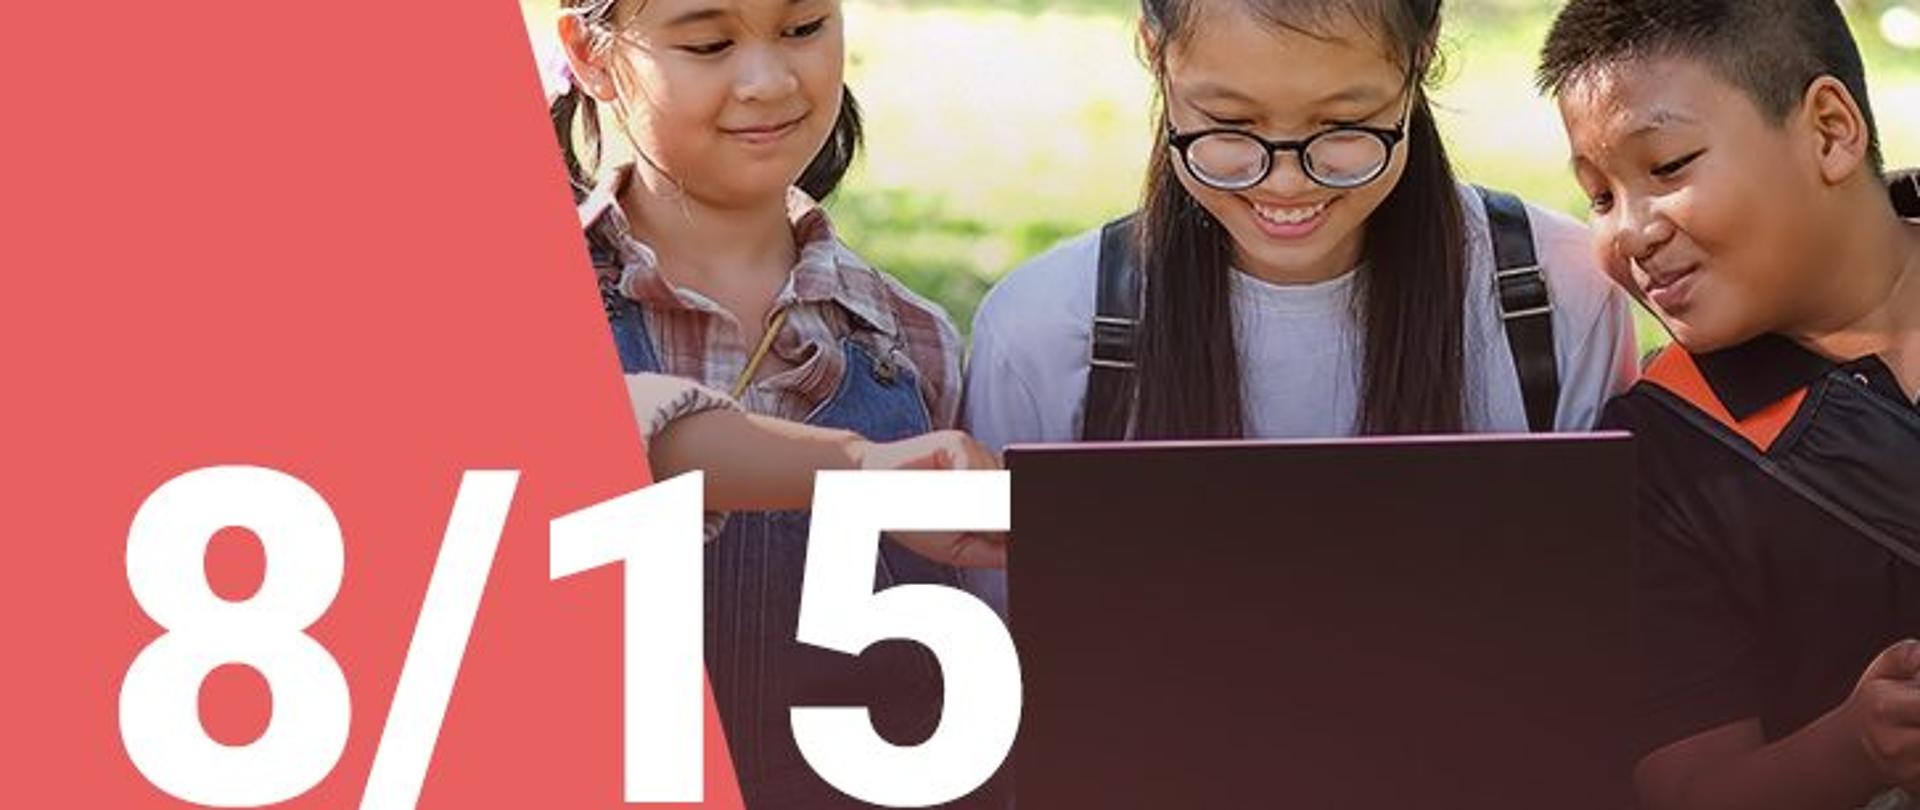 Na zdjęciu widzimy dwie dziewczynki oraz chłopca patrzących z uśmiechem na ekran laptopa. W dolnym lewym roku widoczna jest numeracja zdjęcia (8/15) 